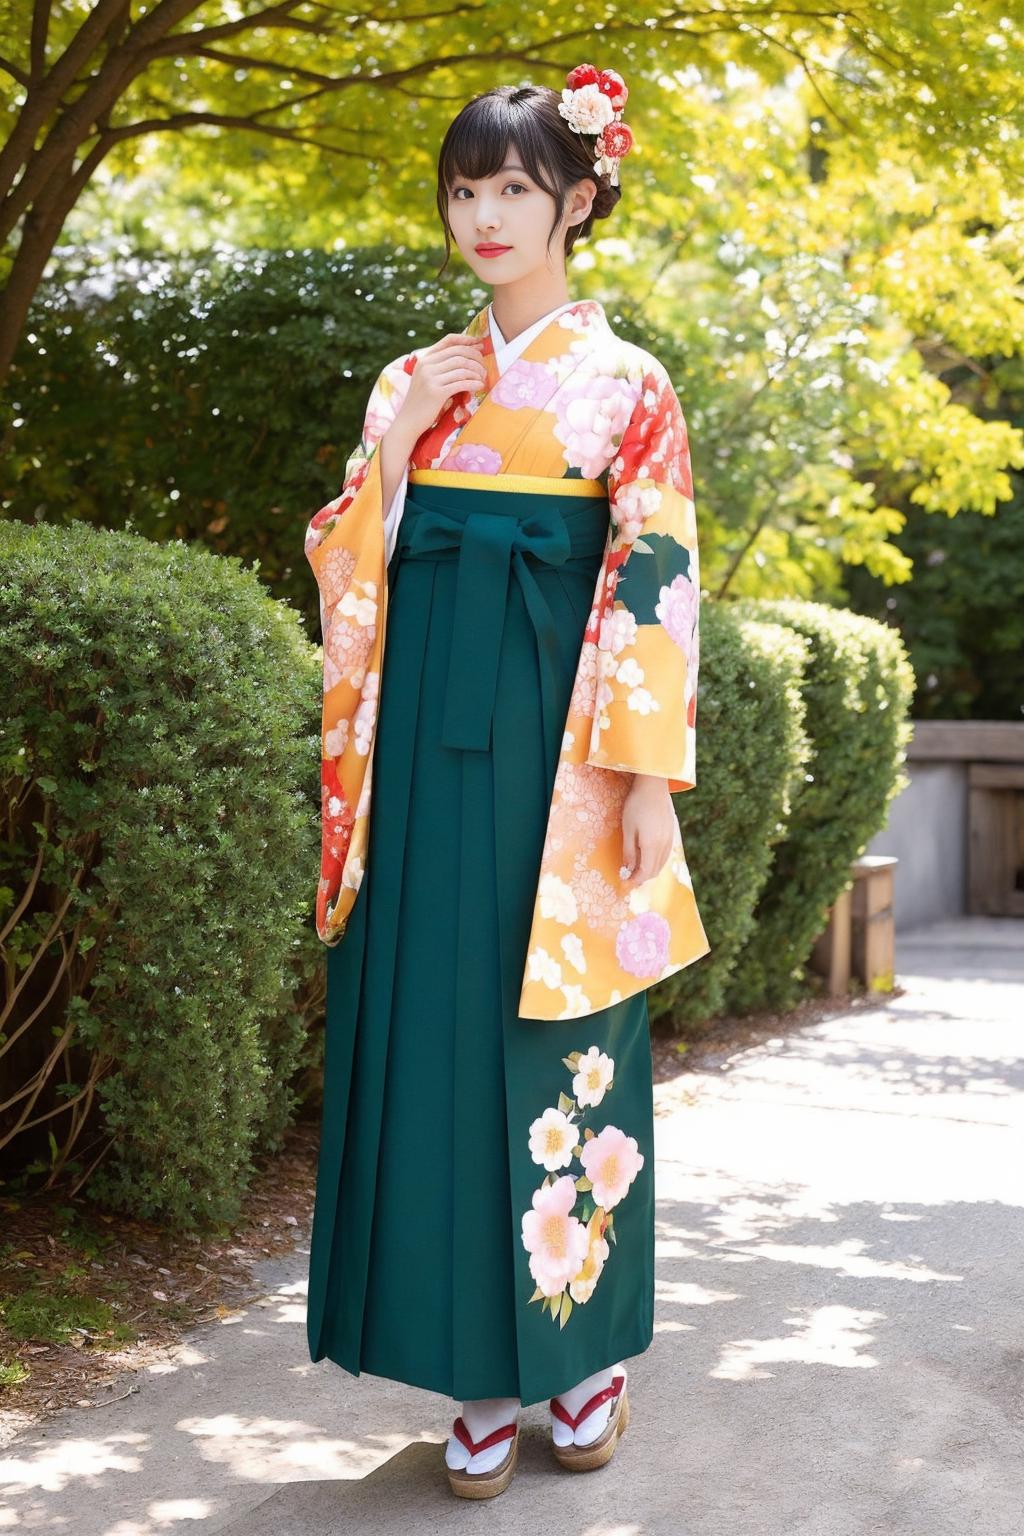 袴少女 hakama girl 和服裤裙 hakama skirt image by Kikkawa